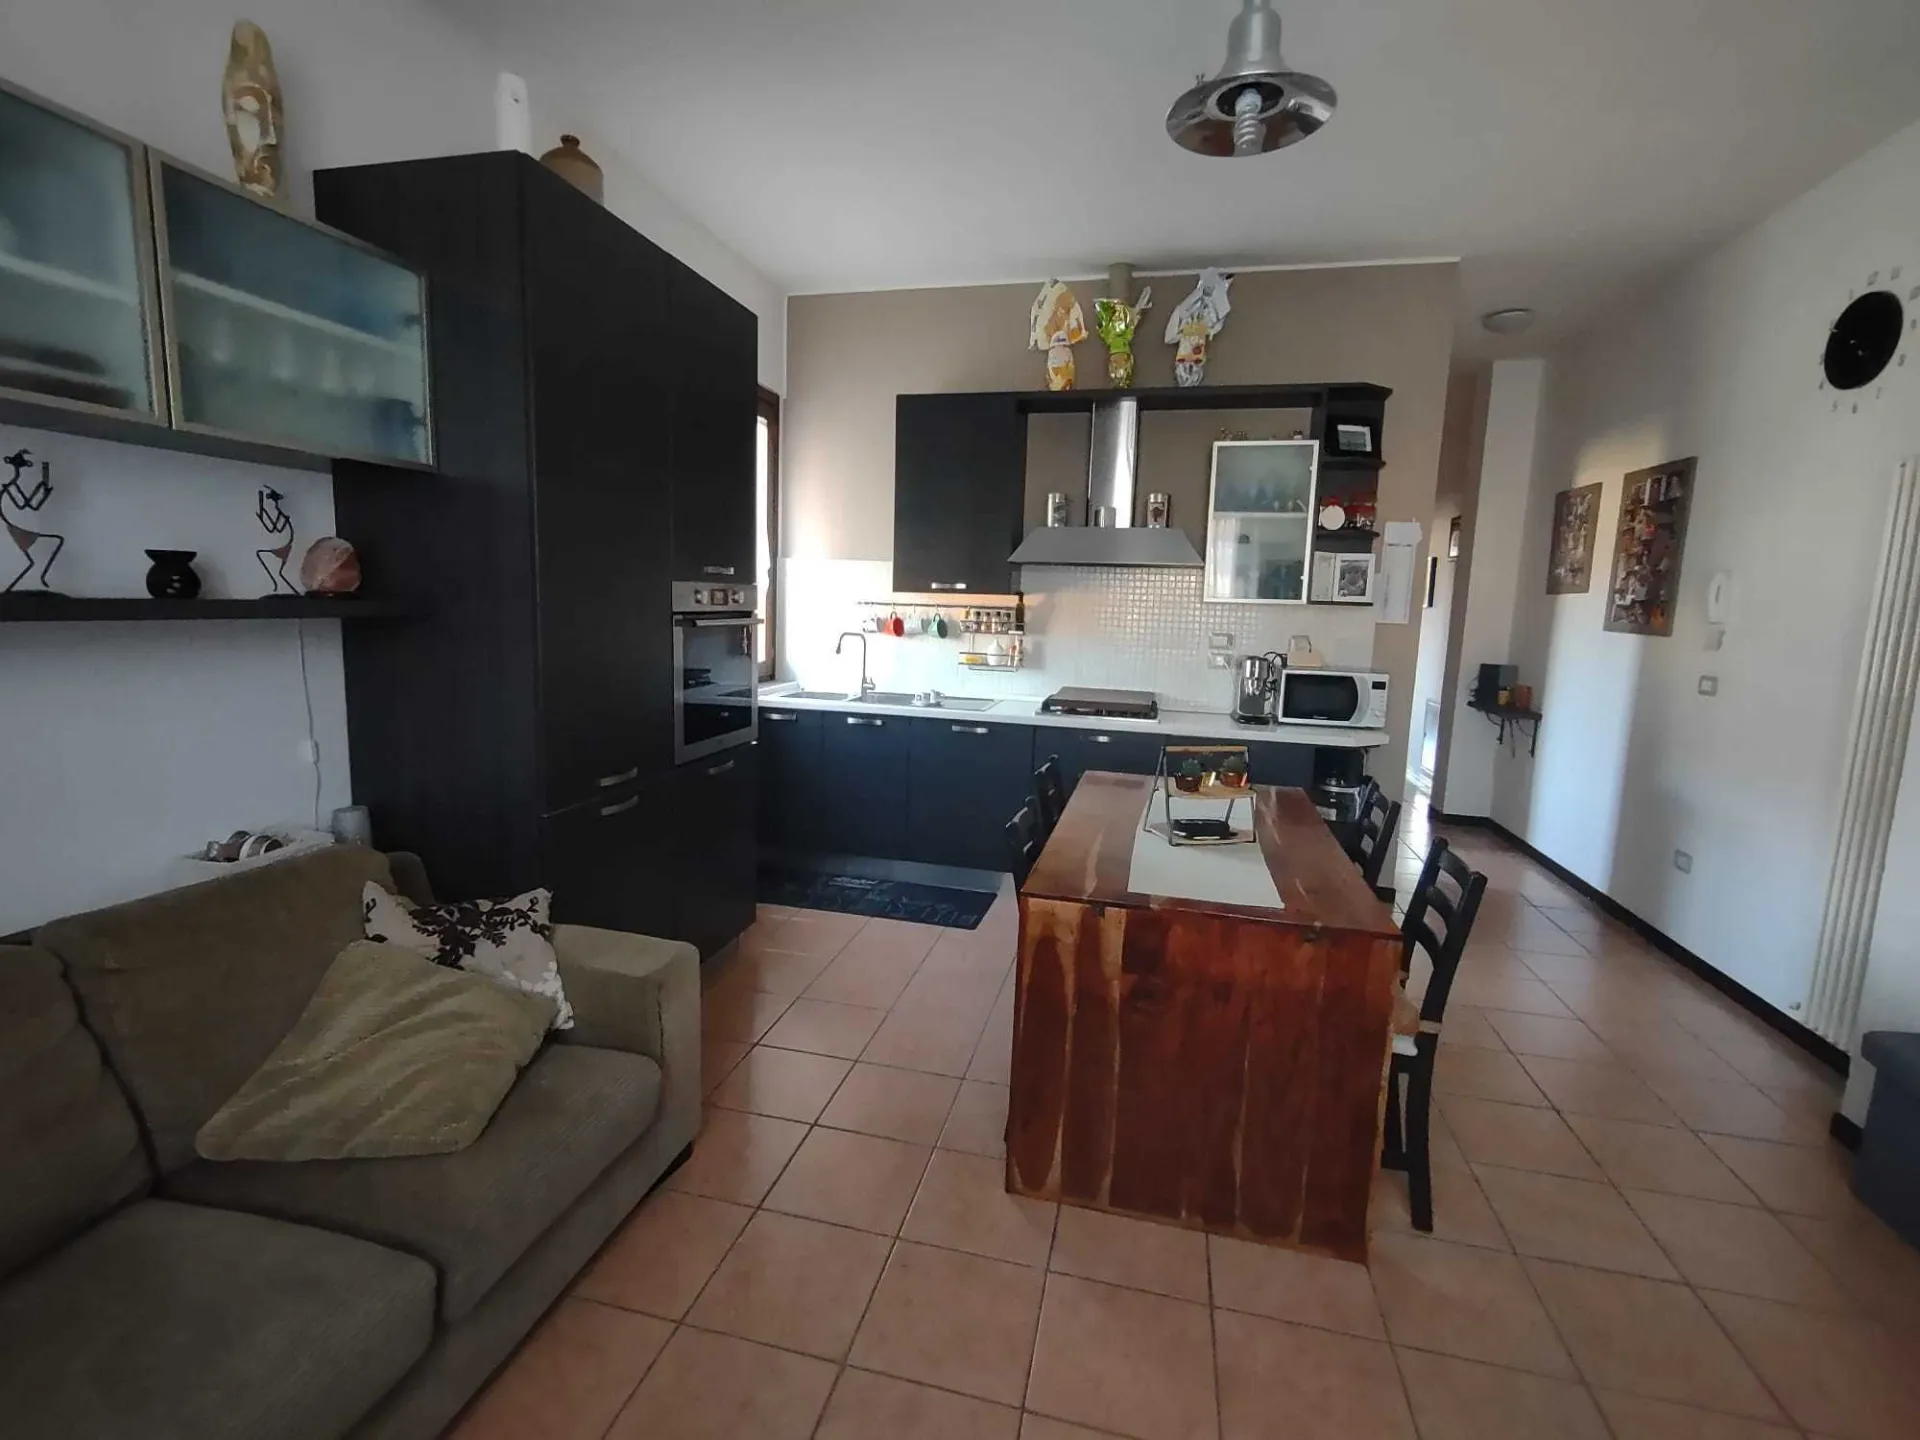 Immagine per Appartamento in vendita a Castelplanio via Clementina Sud 23